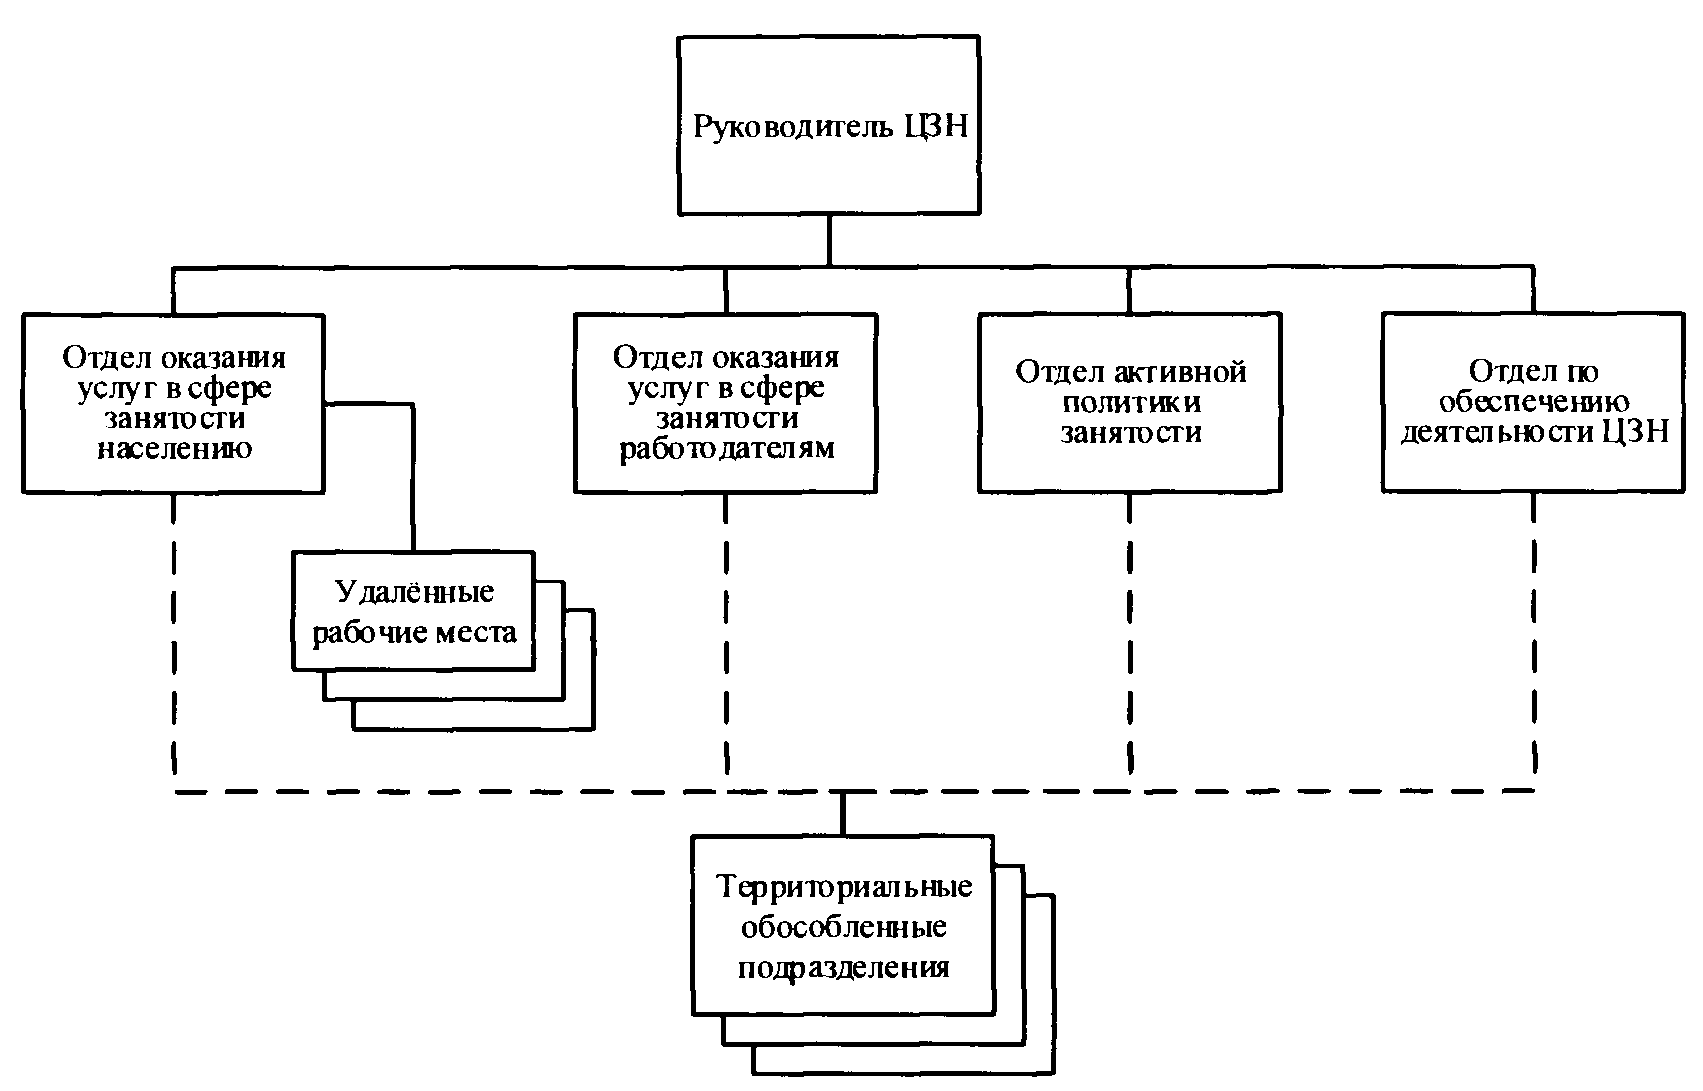 Закон о занятости населения в Российской Федерации: основные положения и механизмы реализации